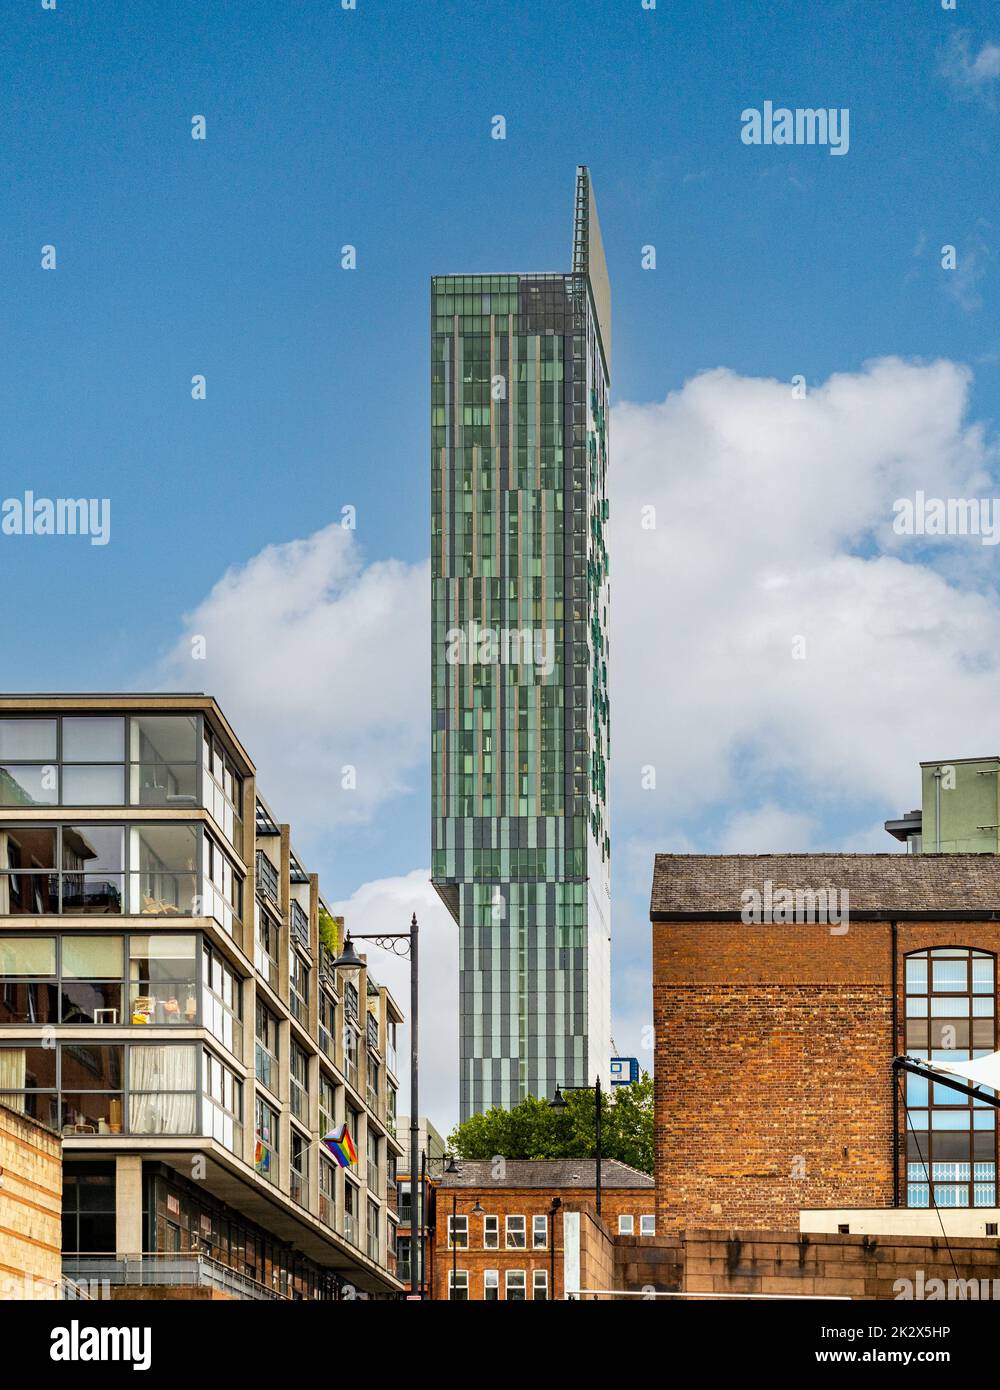 Façade ouest de la tour Beetdam, gratte-ciel de 47 étages à usage mixte, vue de Rice Street, Castlefield. Manchester. ROYAUME-UNI Banque D'Images